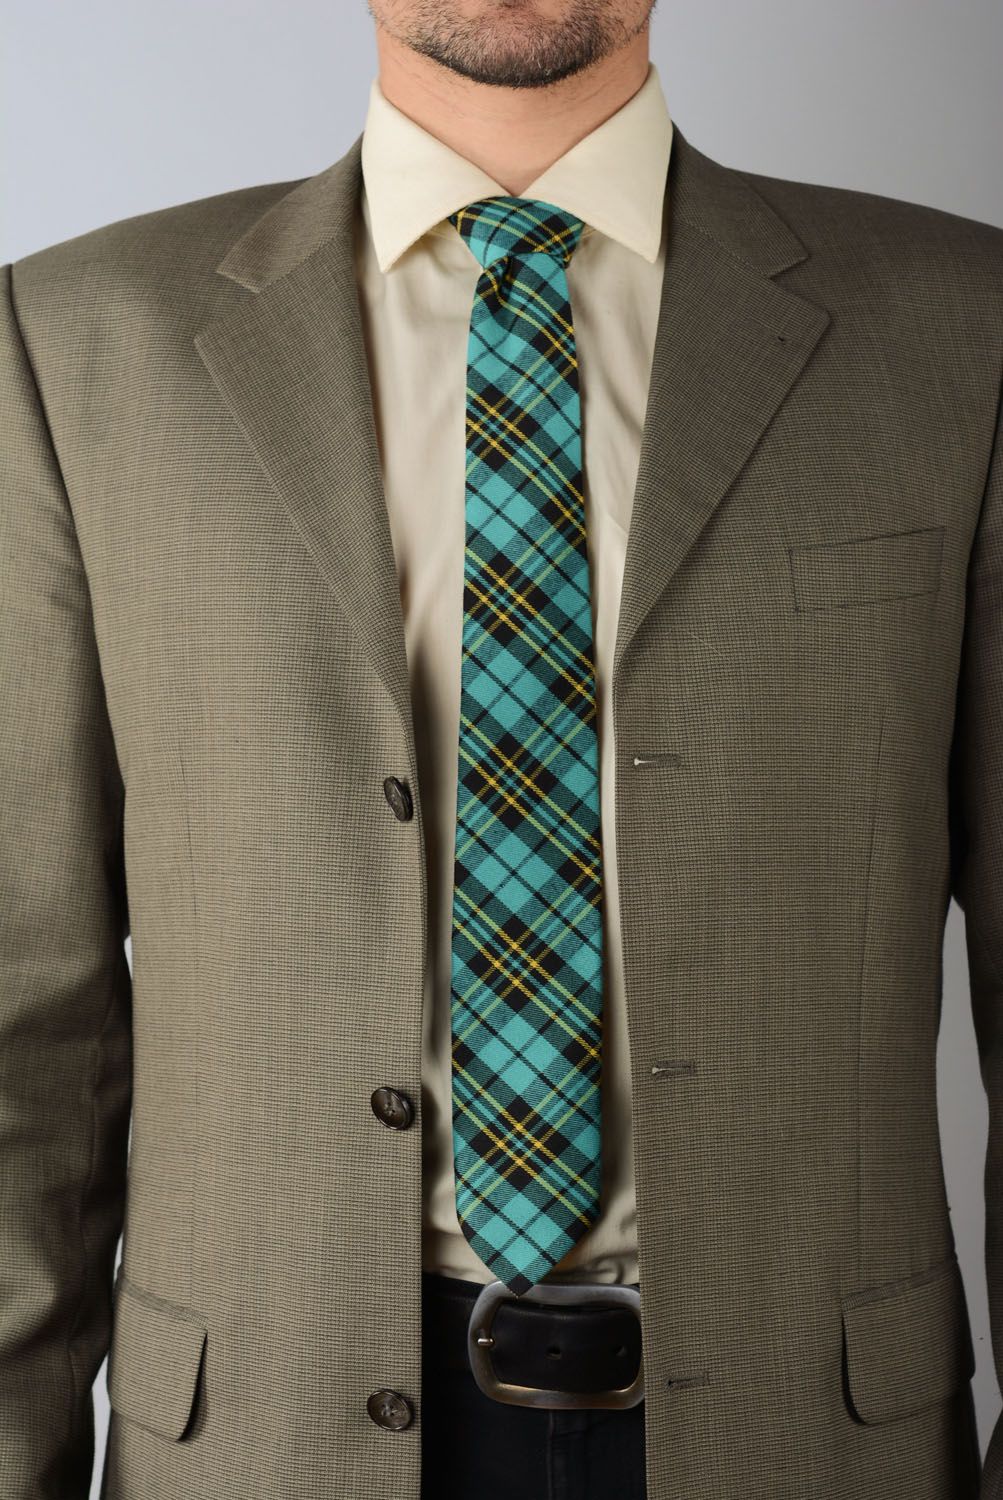 Cravate en tweed turquoise faite main photo 1